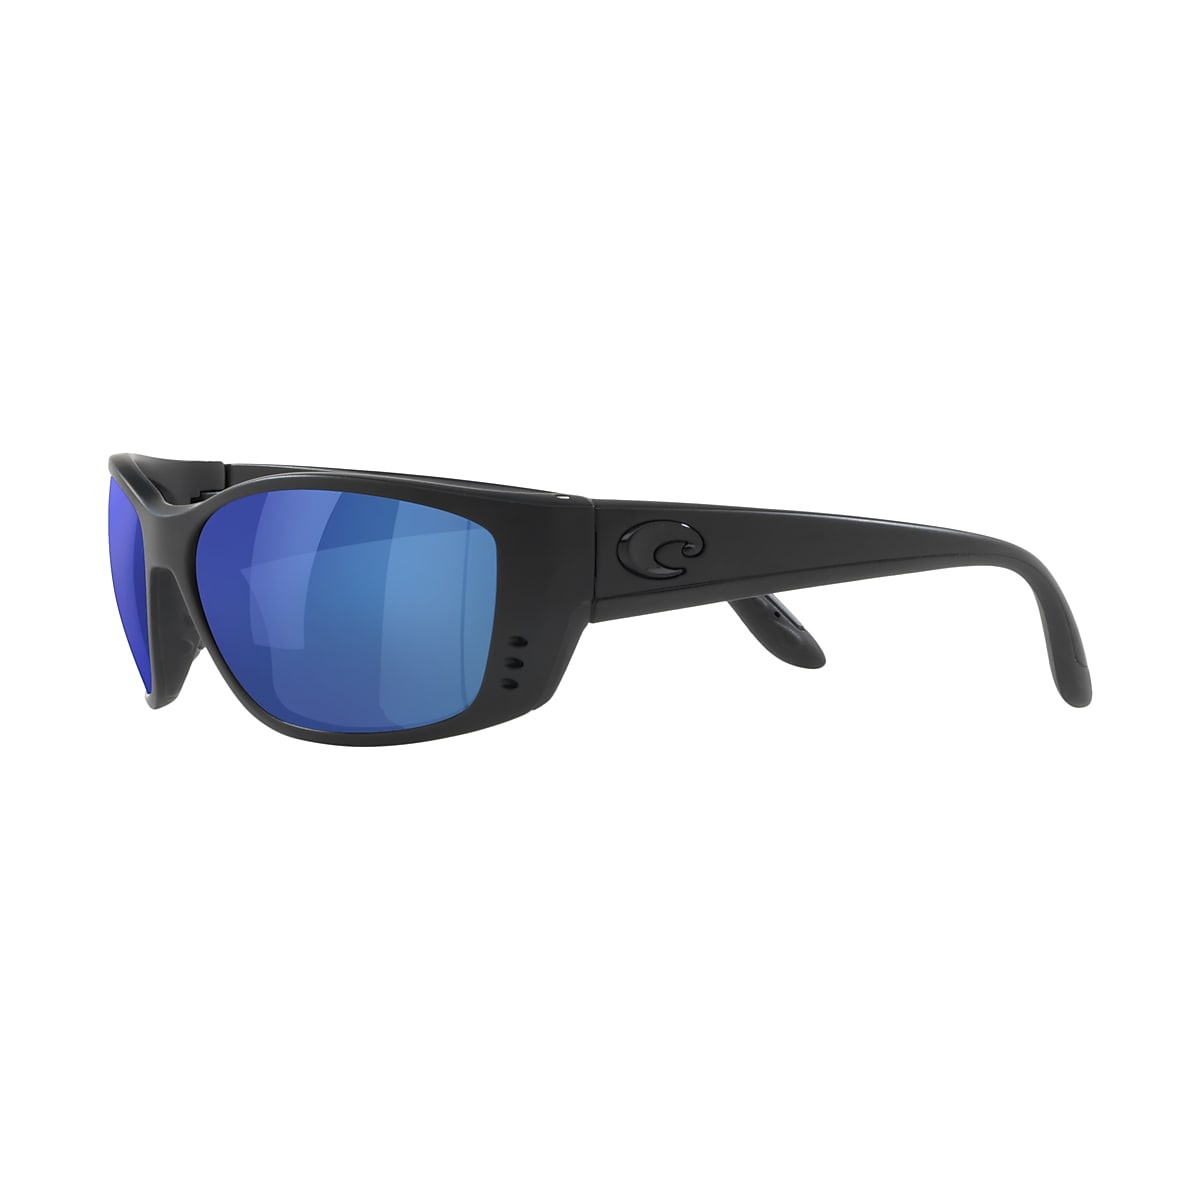 Fisch Readers Polarized Sunglasses in Blue Mirror | Costa Del Mar®